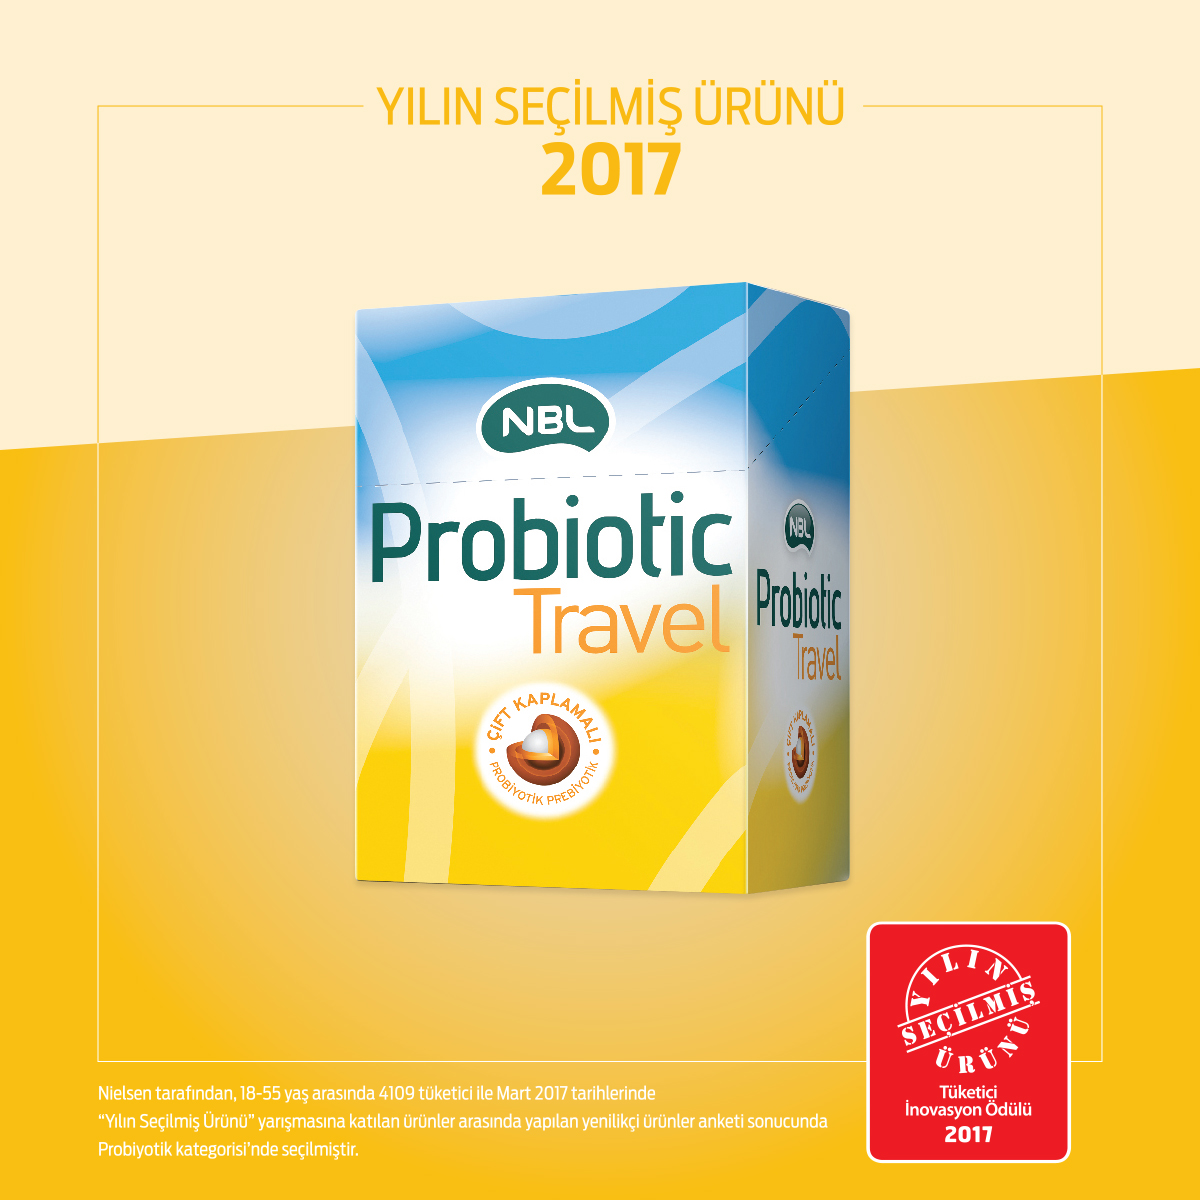 NBL ProbioticT ravel